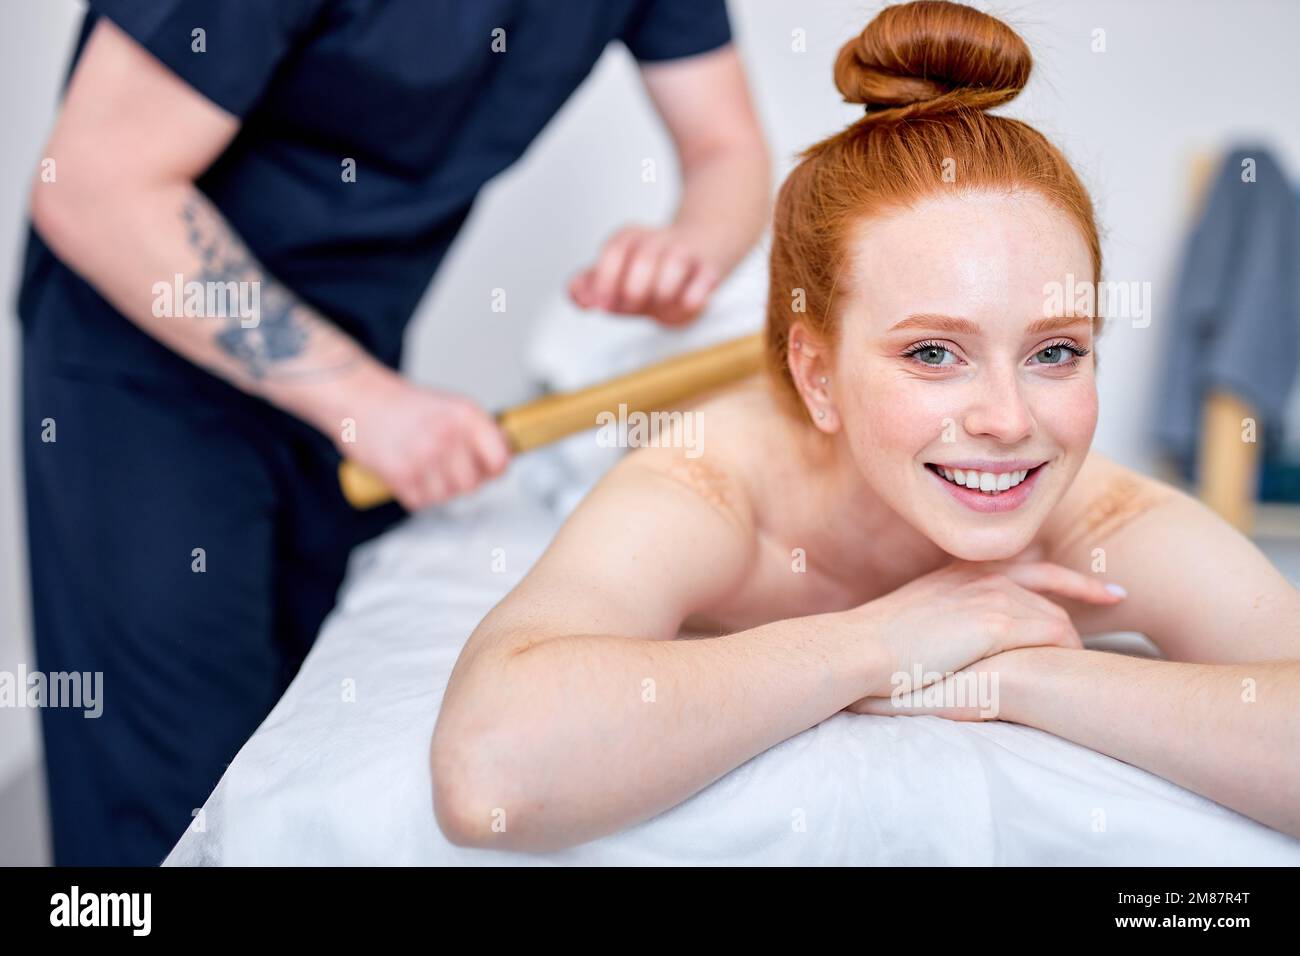 Unerkennbarer professioneller Masseur massiert den Rücken eines zufriedenen Kunden mit Bambusstäbchen, Fokus auf rothaarige, weibliche Klientin, die auf der Couch liegt, lächelt, ha Stockfoto